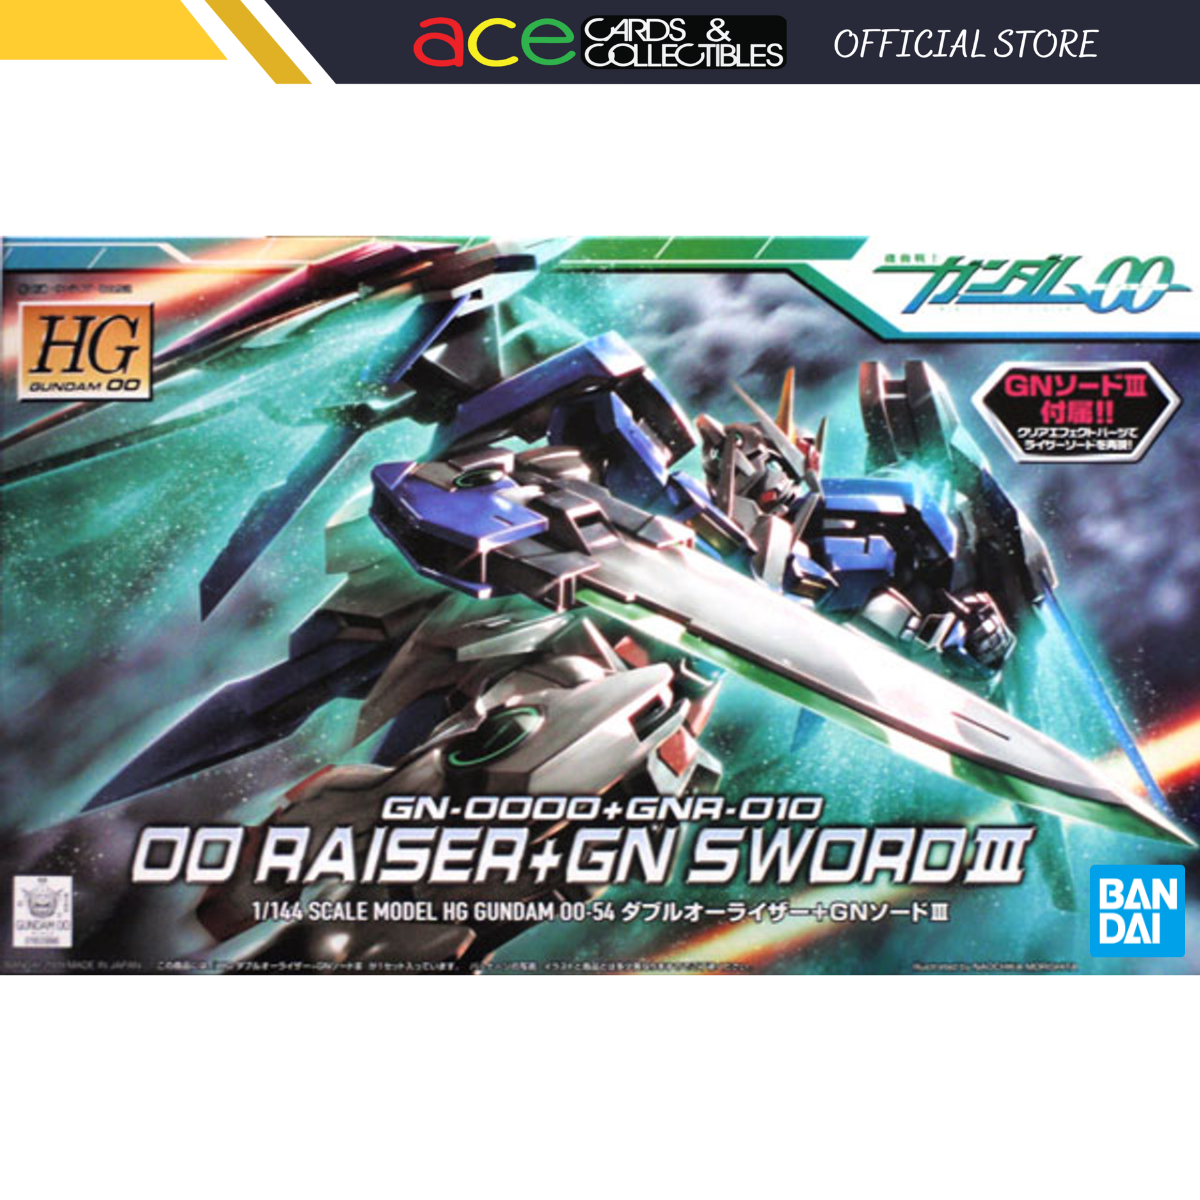 Gunpla HG1/144 OO Raiser + GN Sword III-Bandai-Ace Cards & Collectibles